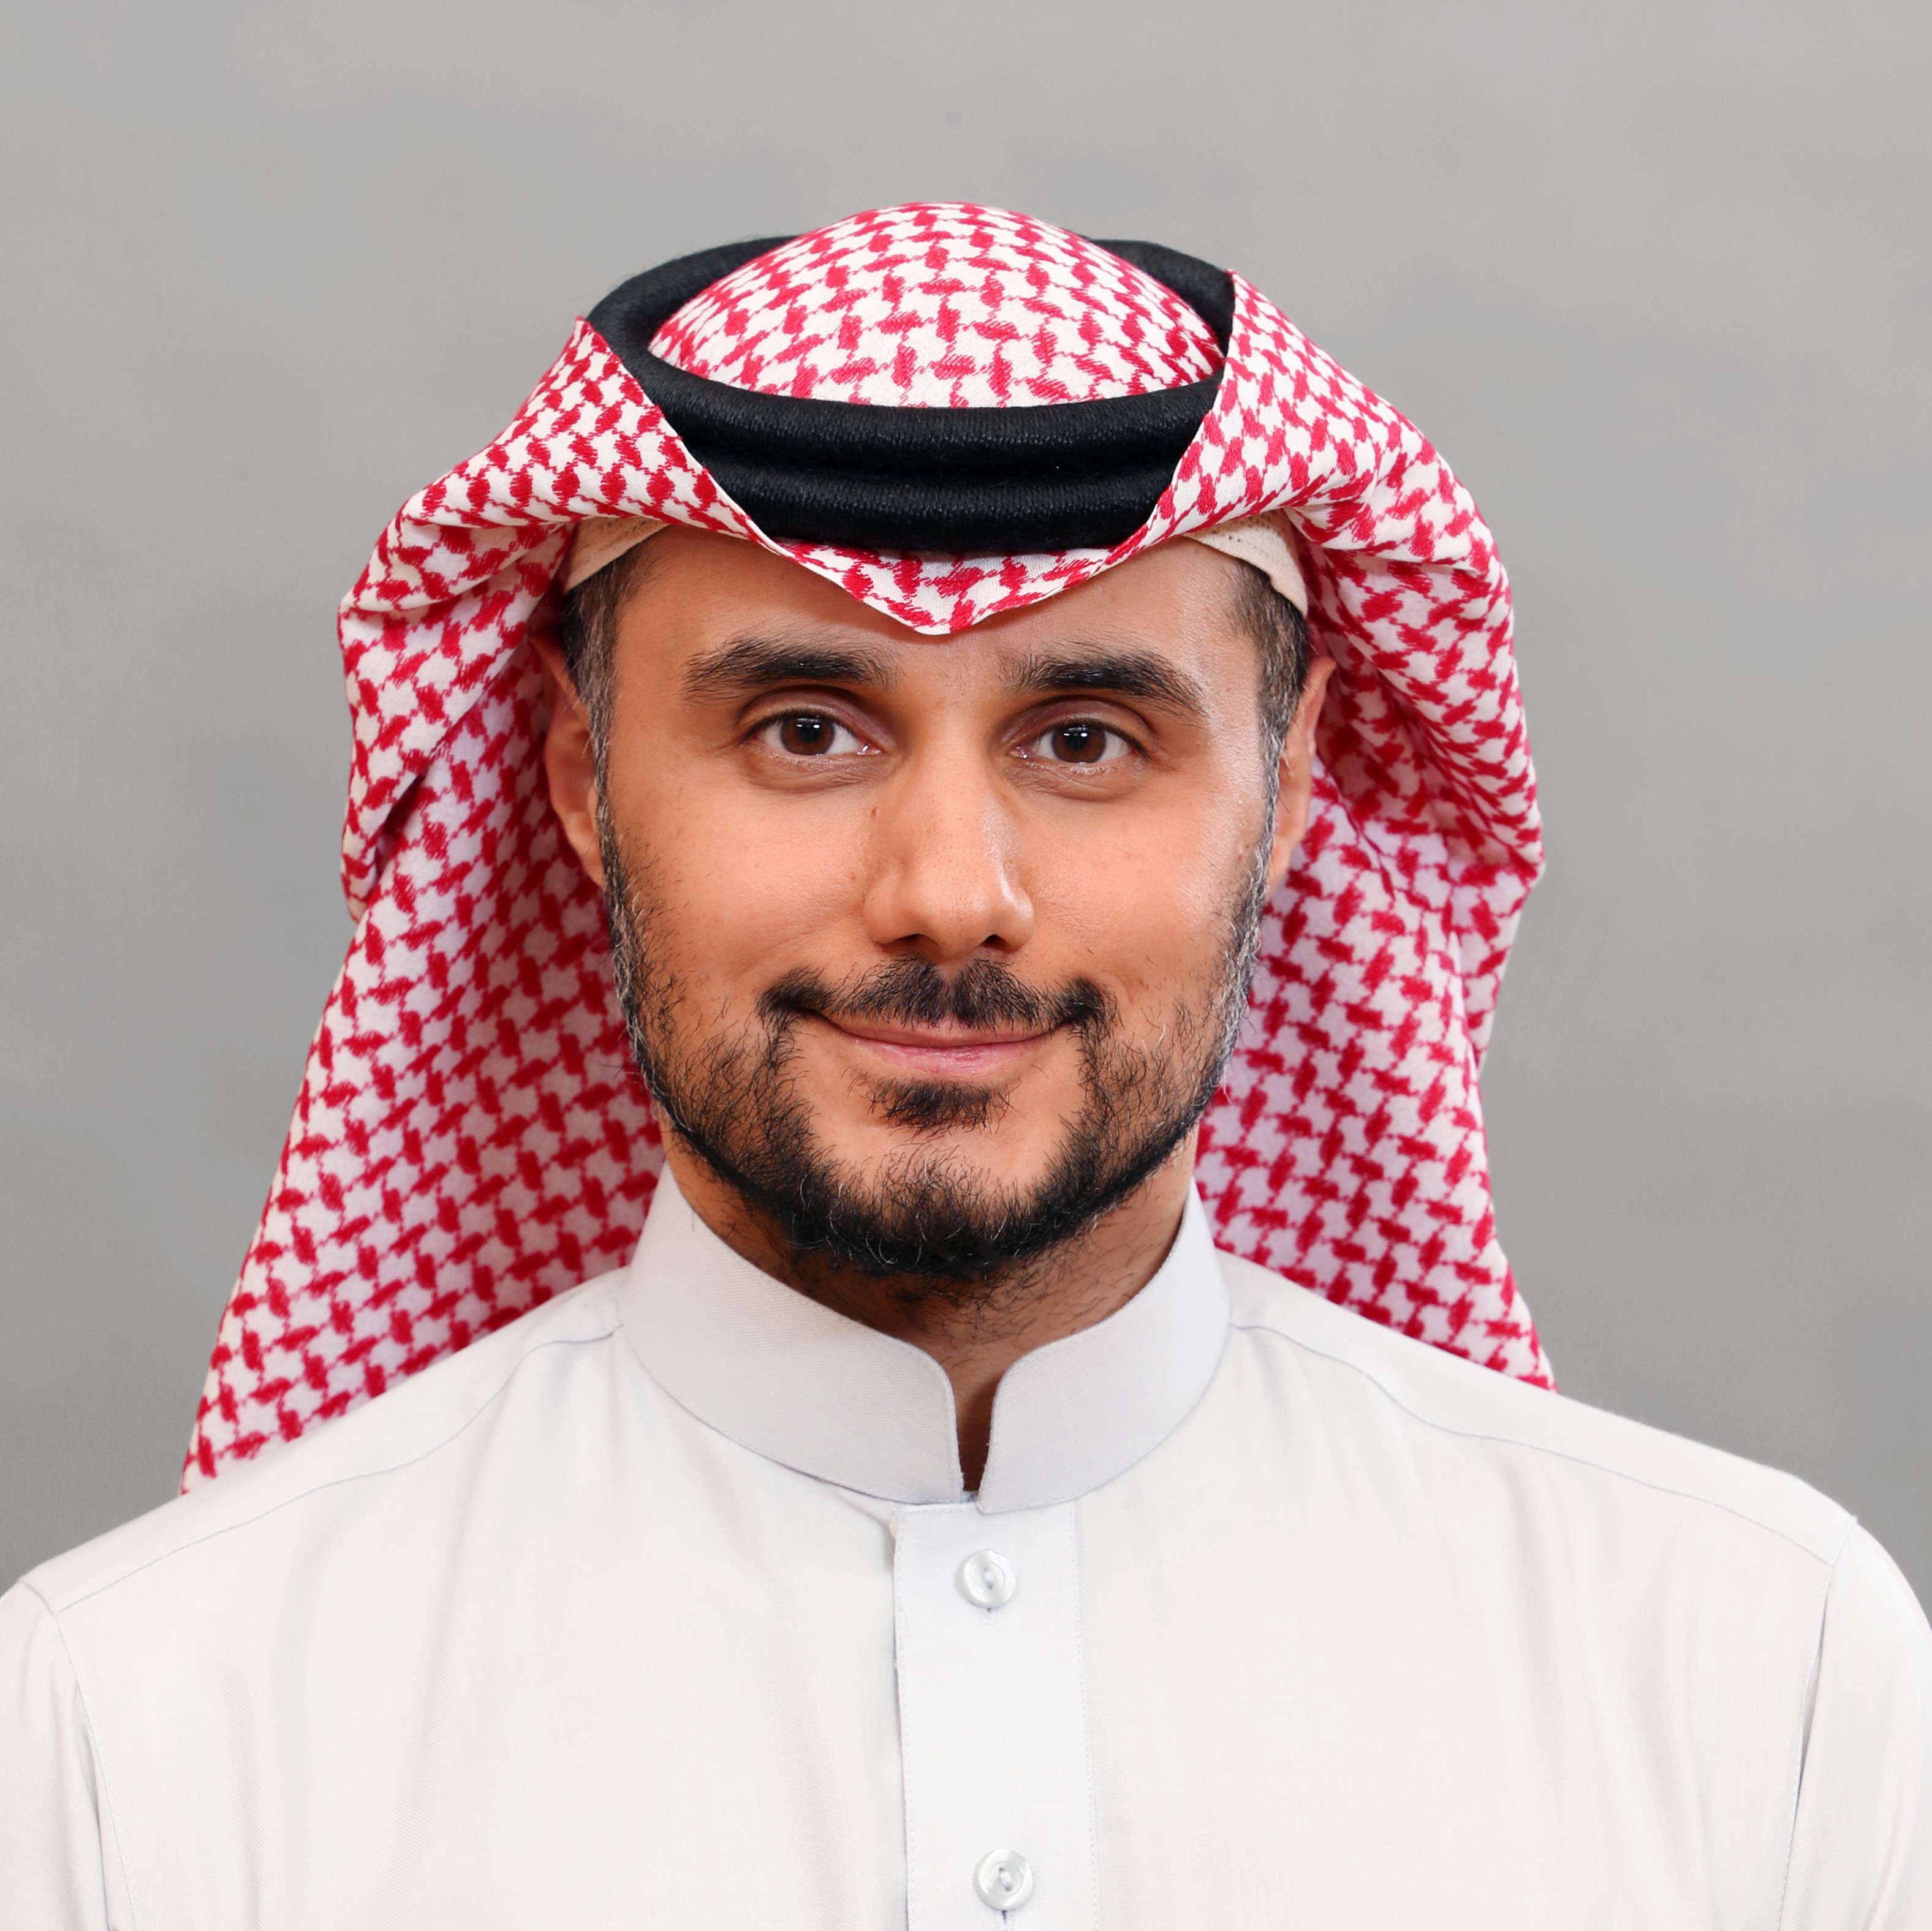 HRH Prince Khaled bin Alwaleed bin Talal Al Saud